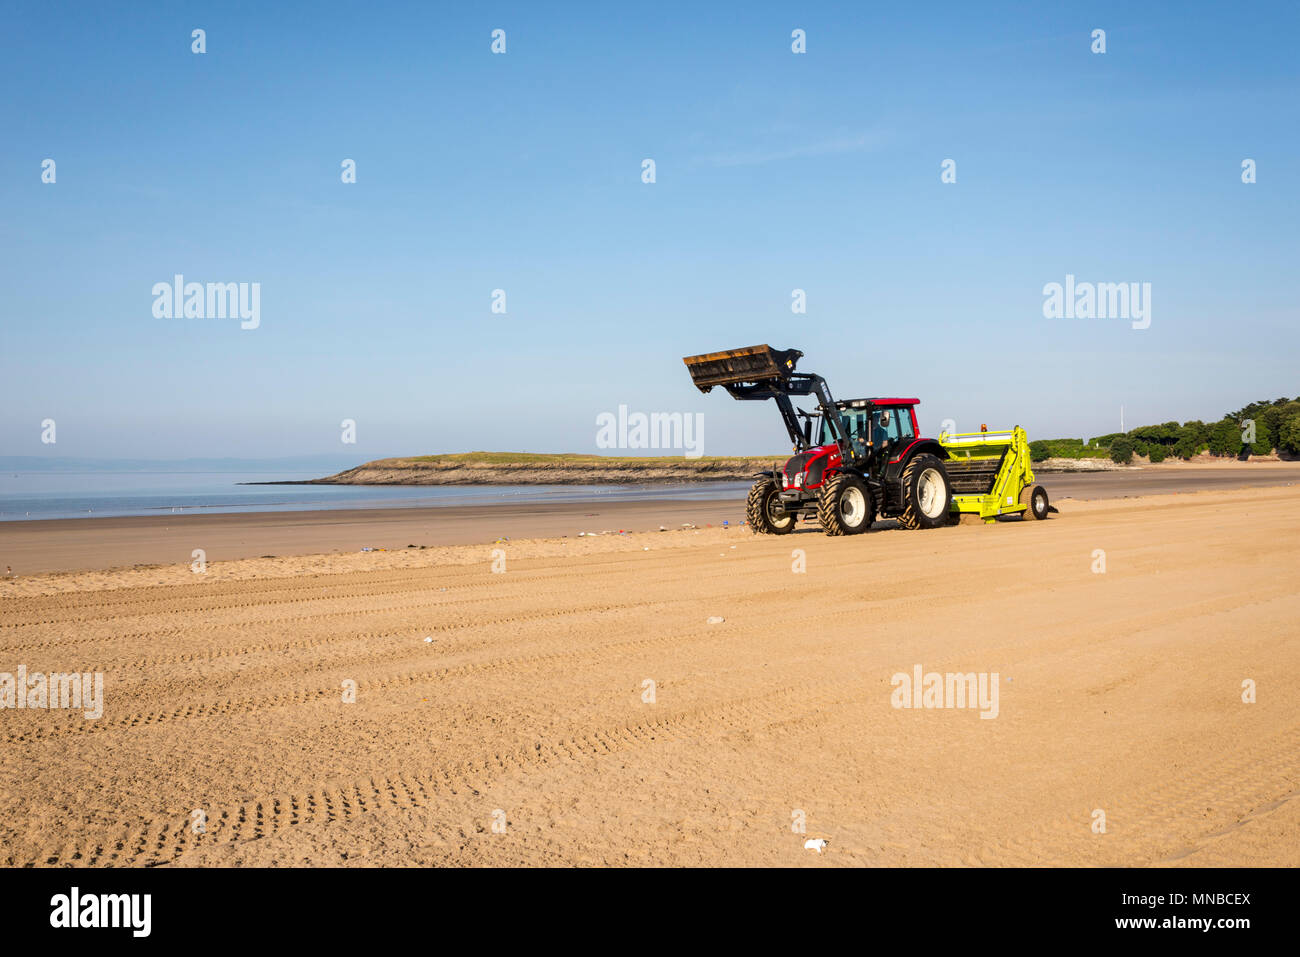 Whitmore Bay Beach bei Barry Island, Wales, früh an einem hellen, sonnigen Sommermorgen der Wurf durch einen roten Traktor ziehen einer Friseur Surfen Rechen gesäubert werden. Stockfoto